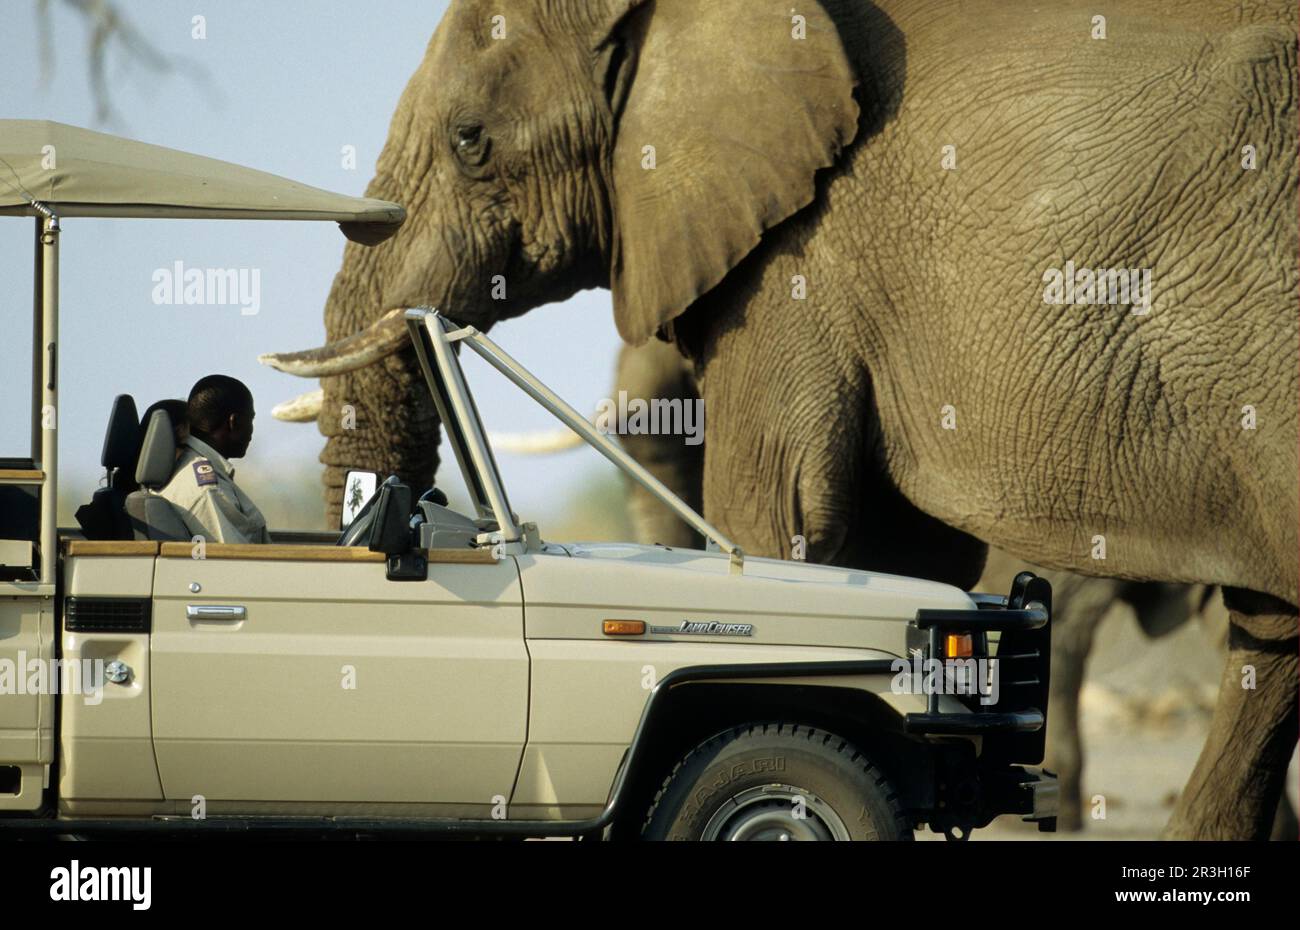 African elephant (Loxodonta africana) Elephant, vehicle, elephants, mammals, animals Elephant Adult passes dangerously close to safari tour vehicle Stock Photo